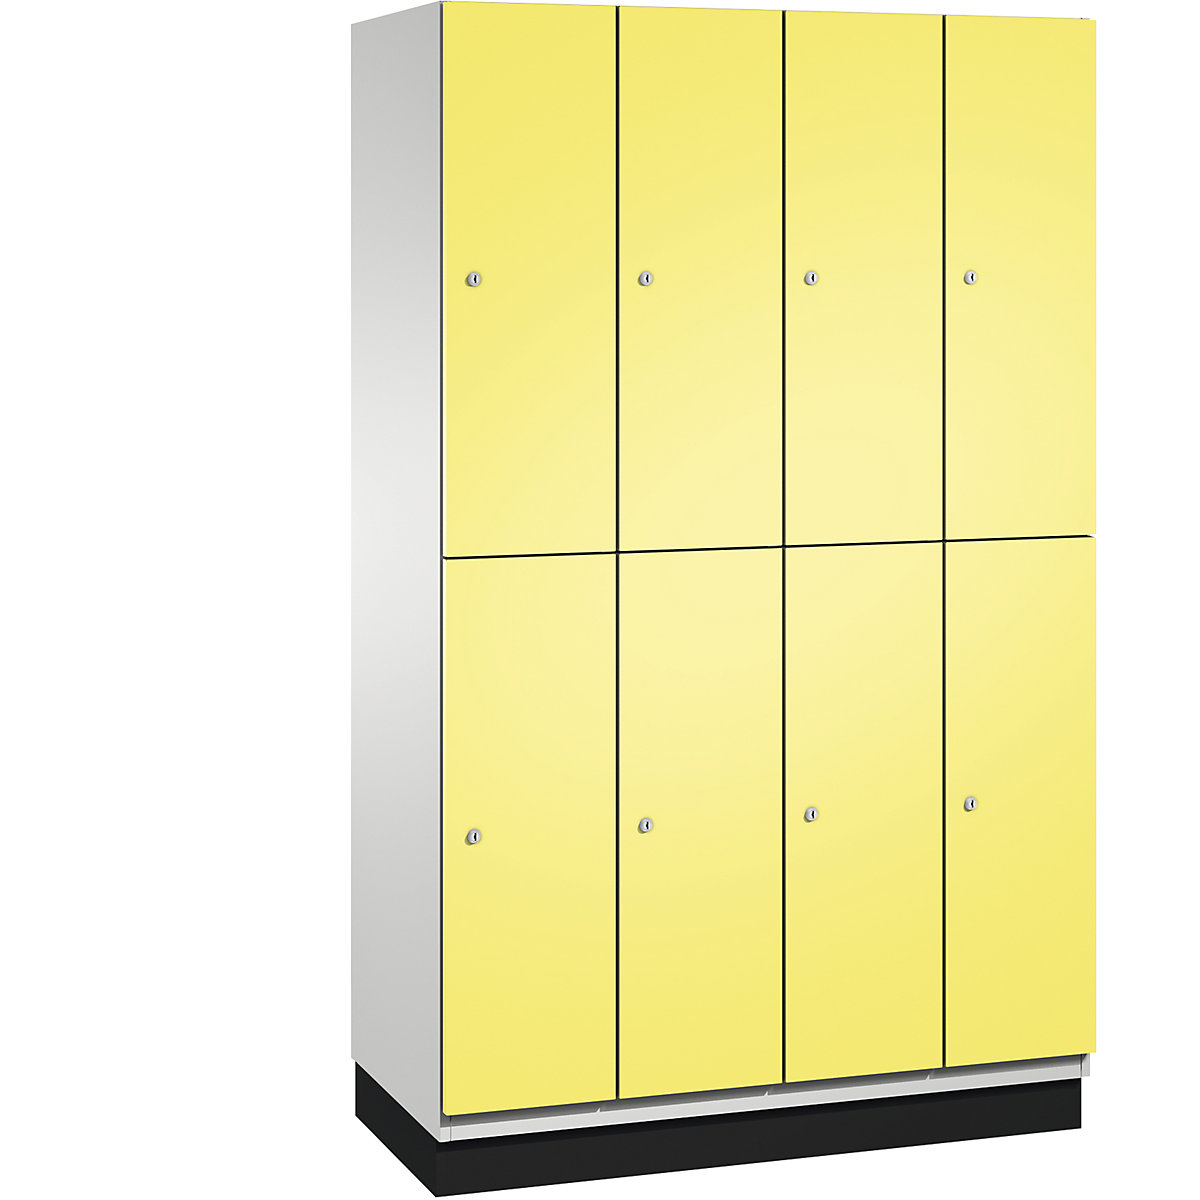 C+P – Skříň s boxy CAMBIO s tyčí na oděvy, 8 boxů, korpus světlý šedý / dveře sírové žluté